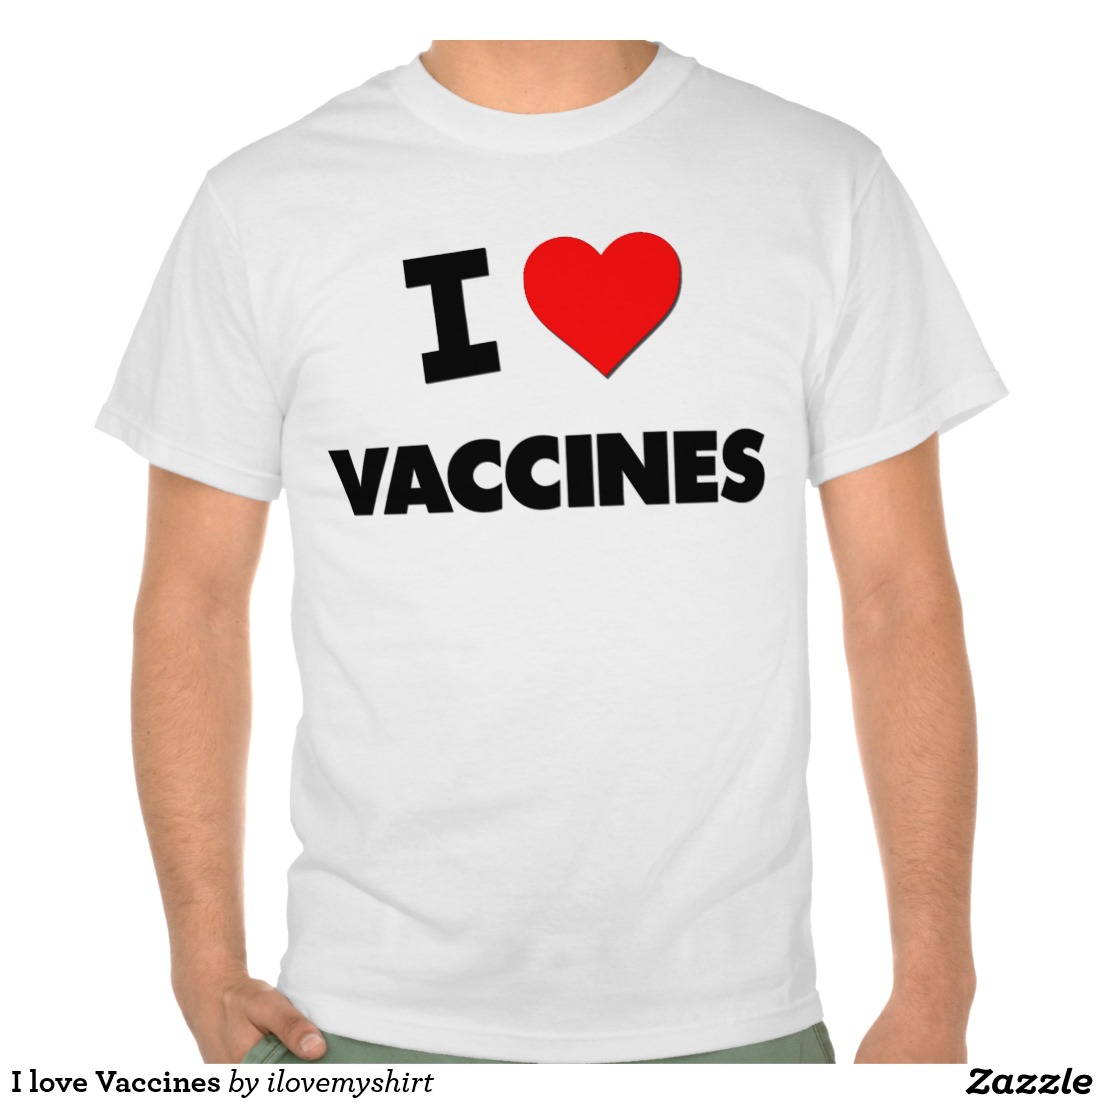 i_love_vaccines_t_shirts-rcc3bcf37b21247b9845621ed86a9e63d_804gy_1024